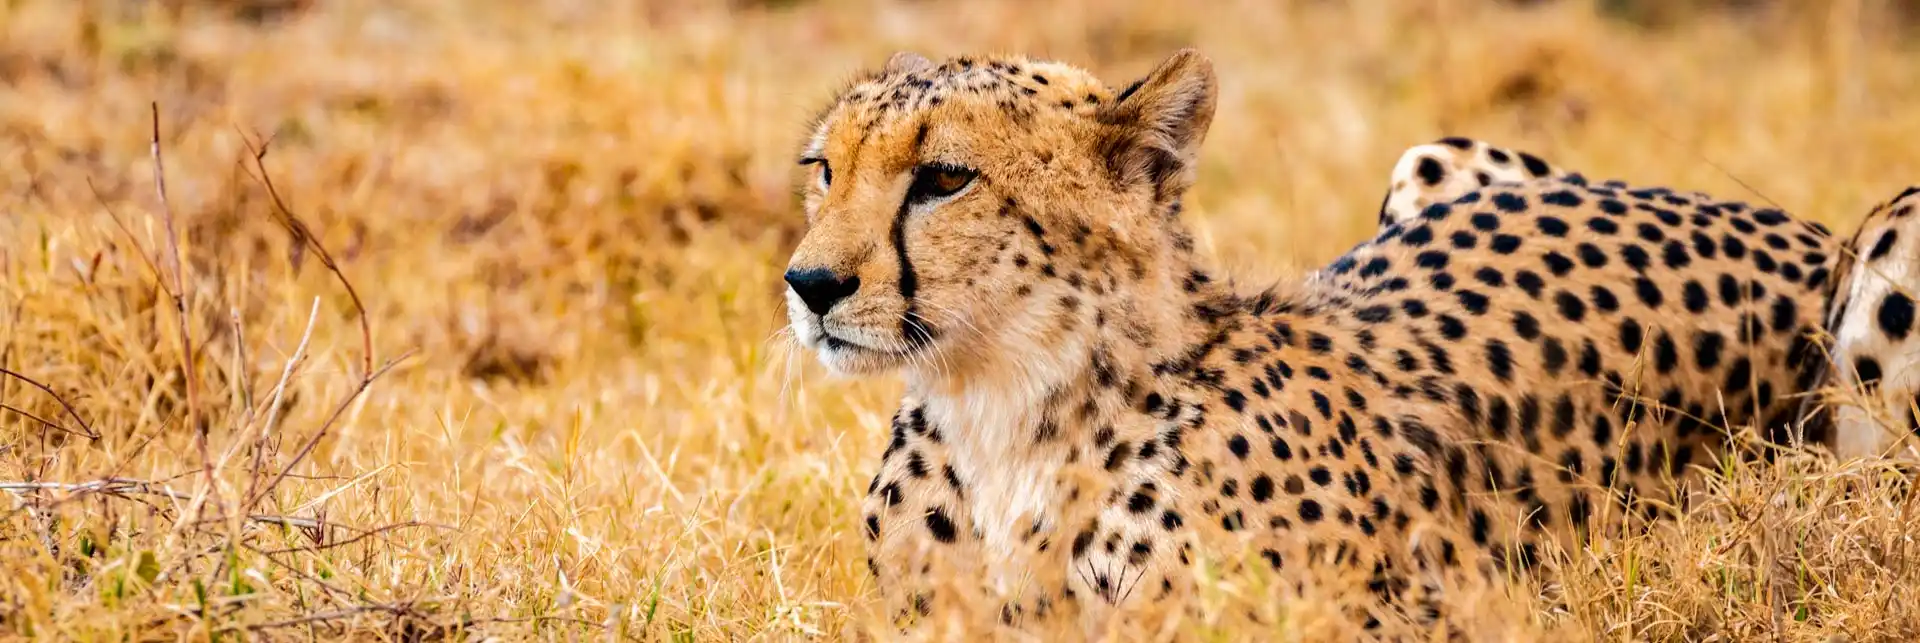 Kenia Urlaub Reiseberichte Safari Gepard